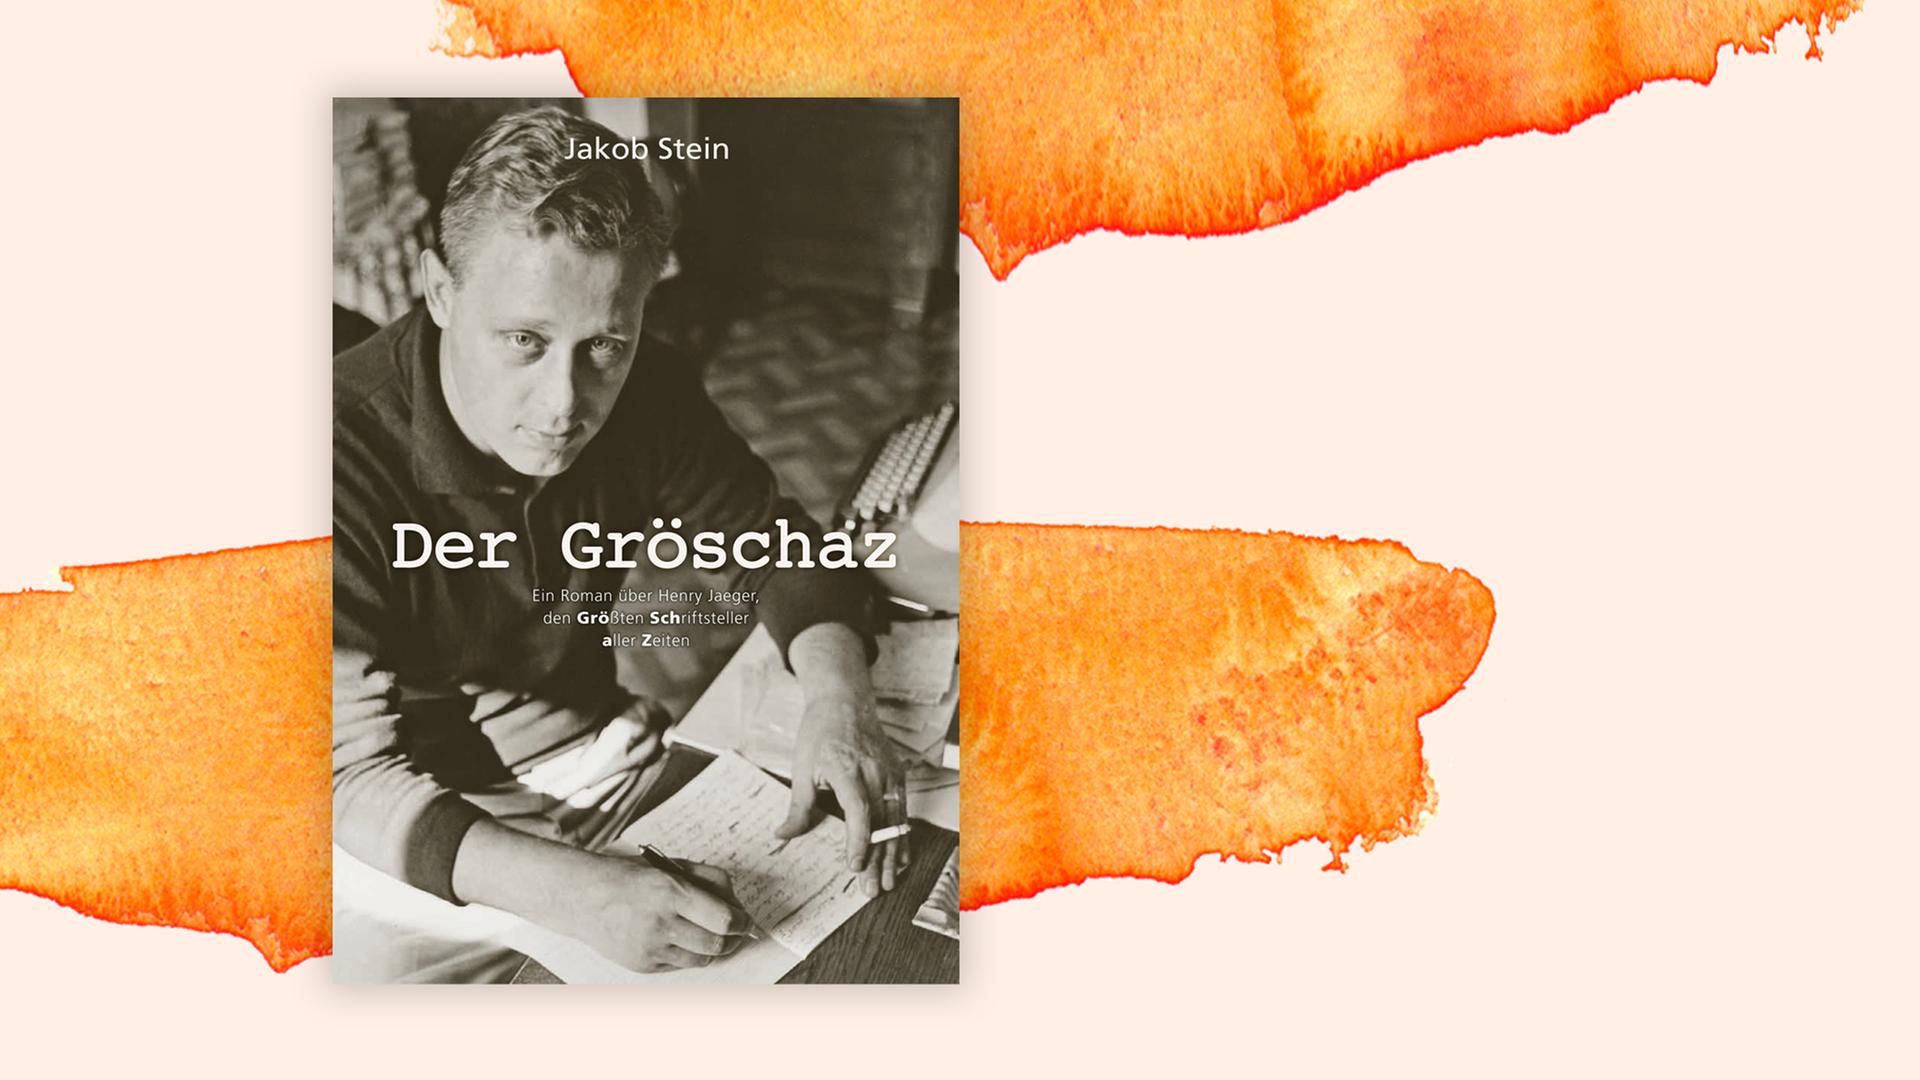 Buchcover zu "Gröschaz" von Jakob Stein.